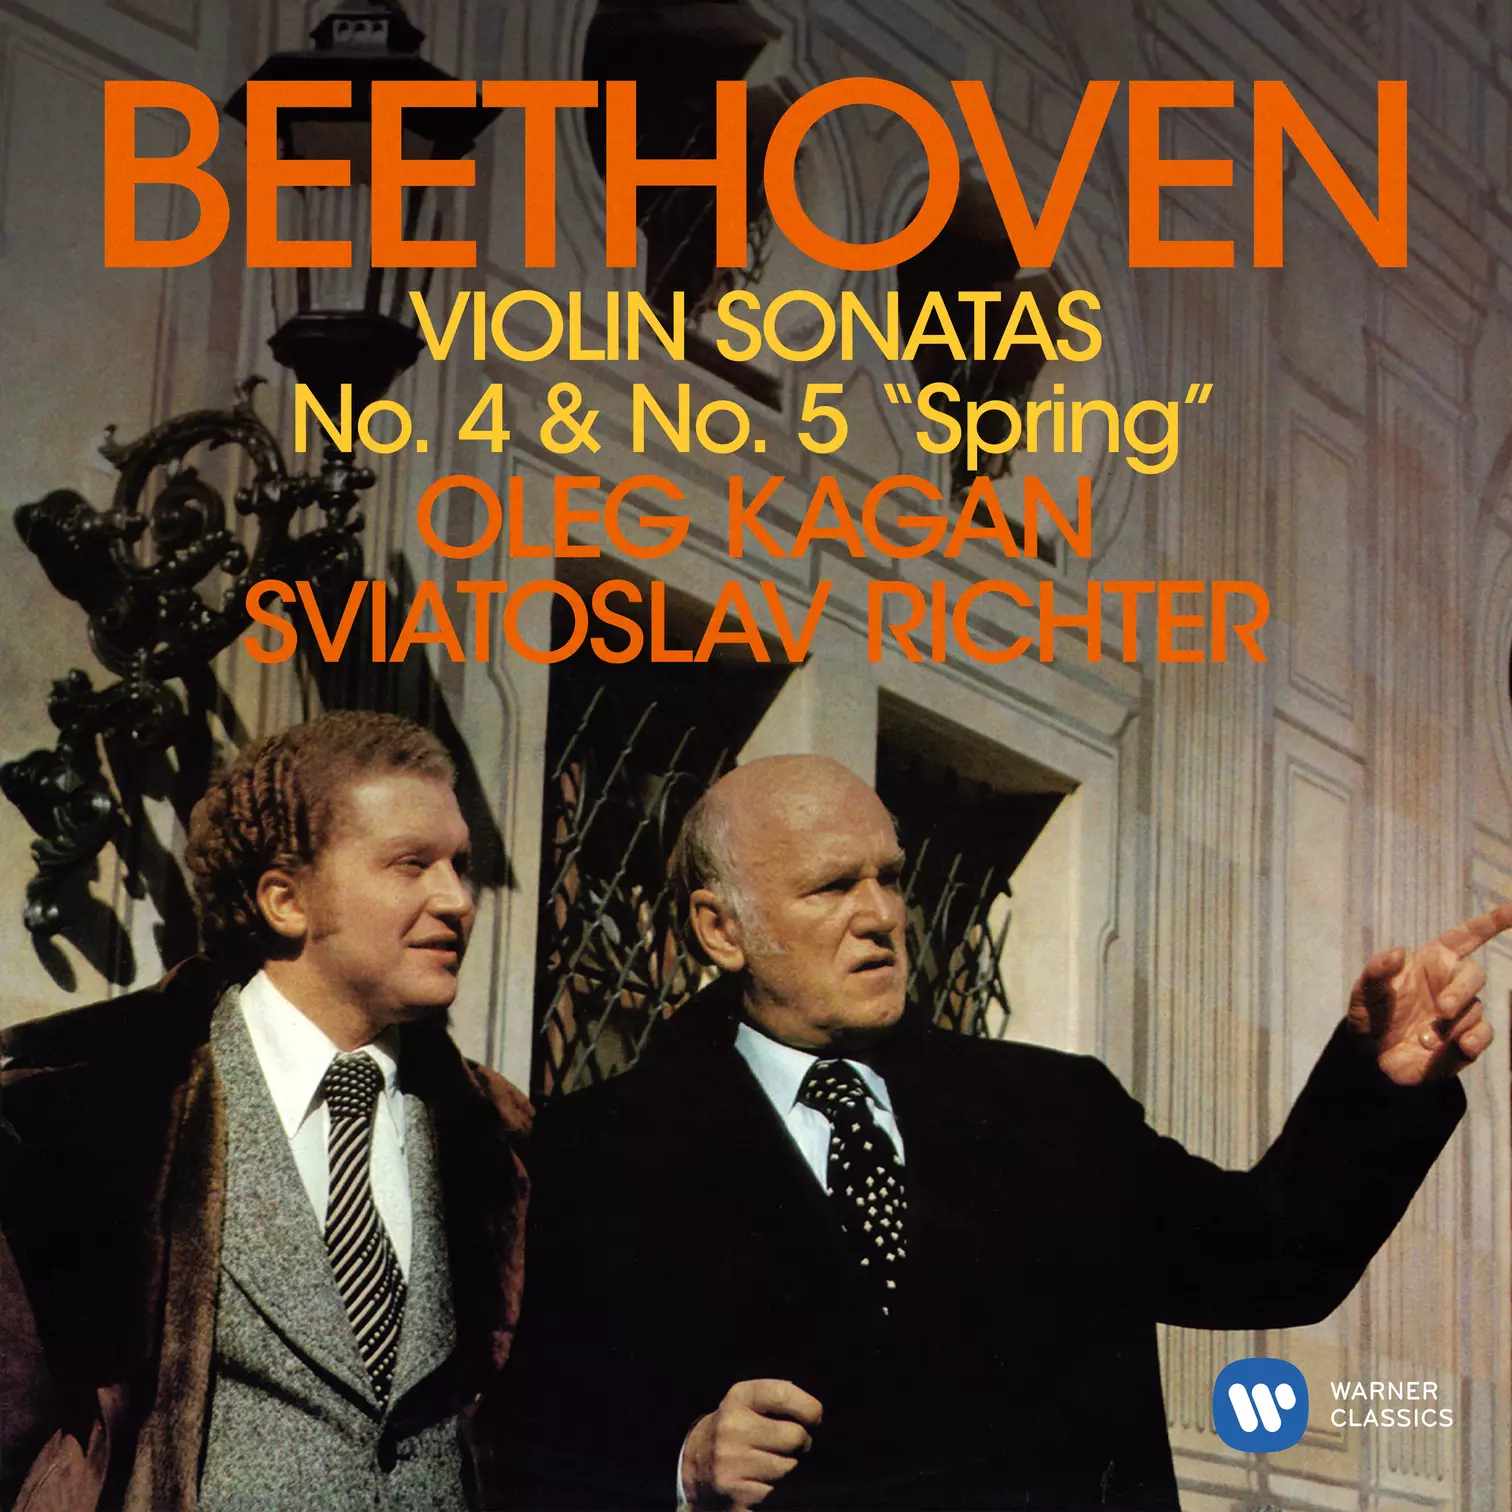 Beethoven: Violin Sonatas Nos. 4 & 5 "Spring"